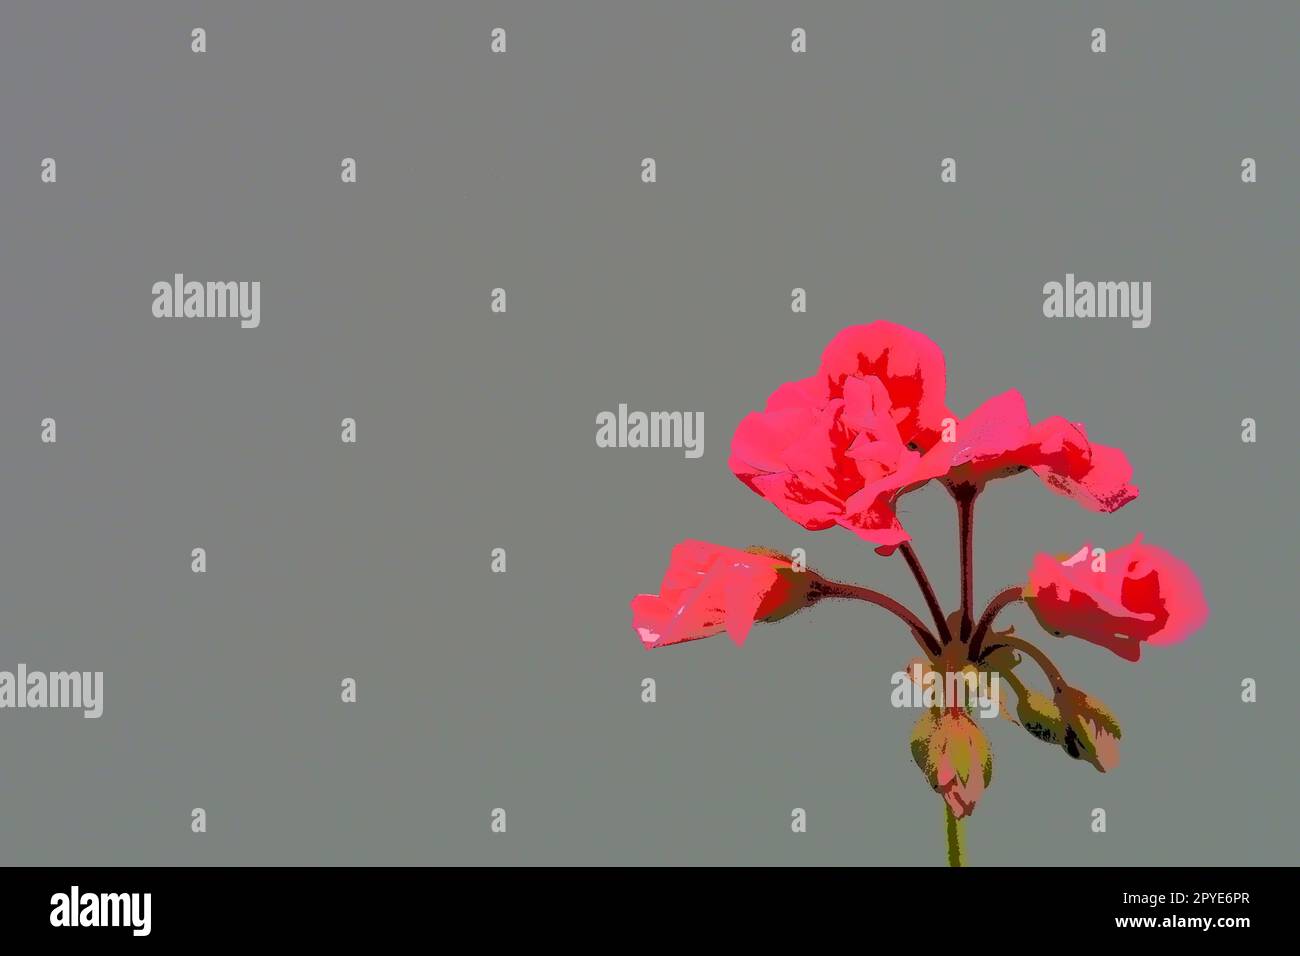 Leuchtend rosa oder purpurrot geranium pelargonium auf grauem Hintergrund. Geraniumblühen gegen eine graue Wand. Kopierraum. Postkarte oder leer für ein Poster. Glückwunsch - Einladung. Stockfoto